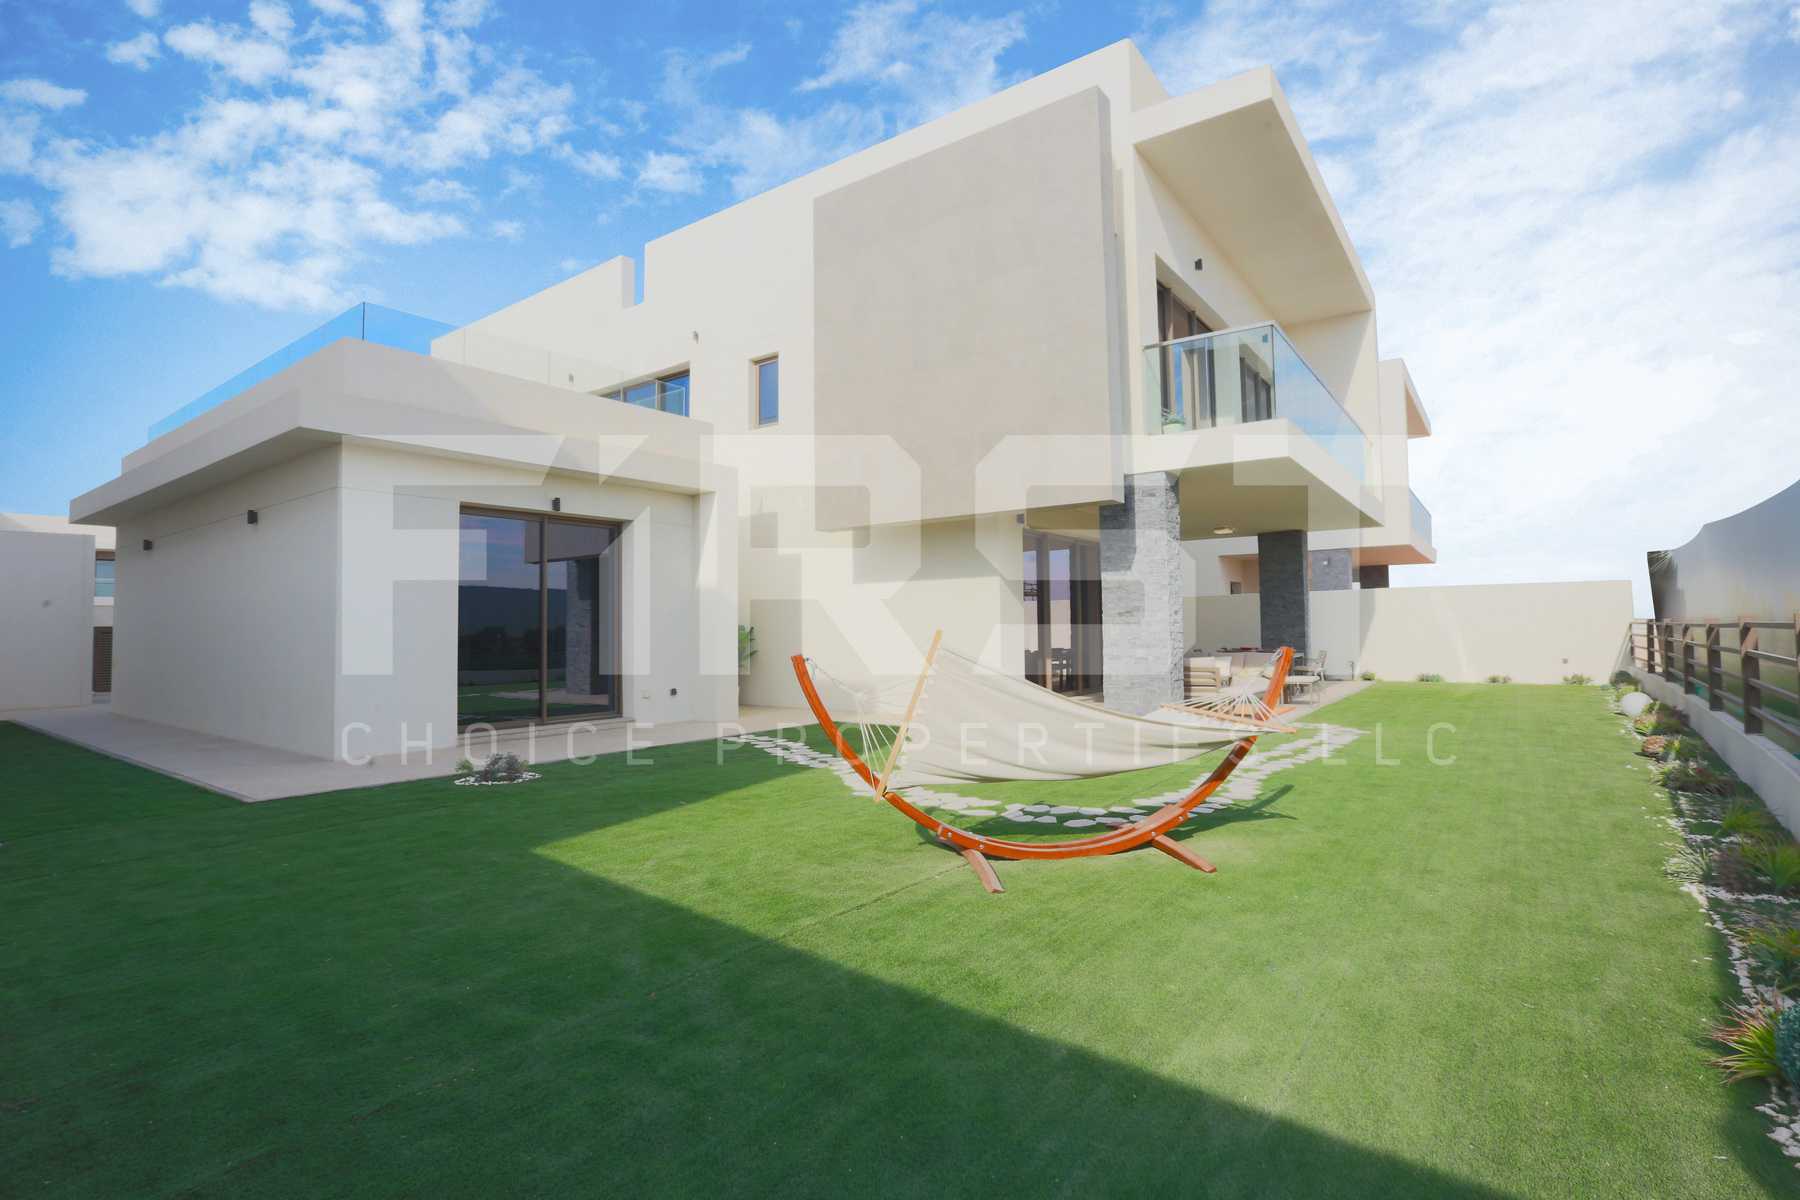 External Photo of 4 Bedroom Villa Type 4F in Yas Acres Yas Island Abu Dhabi UAE (8).jpg